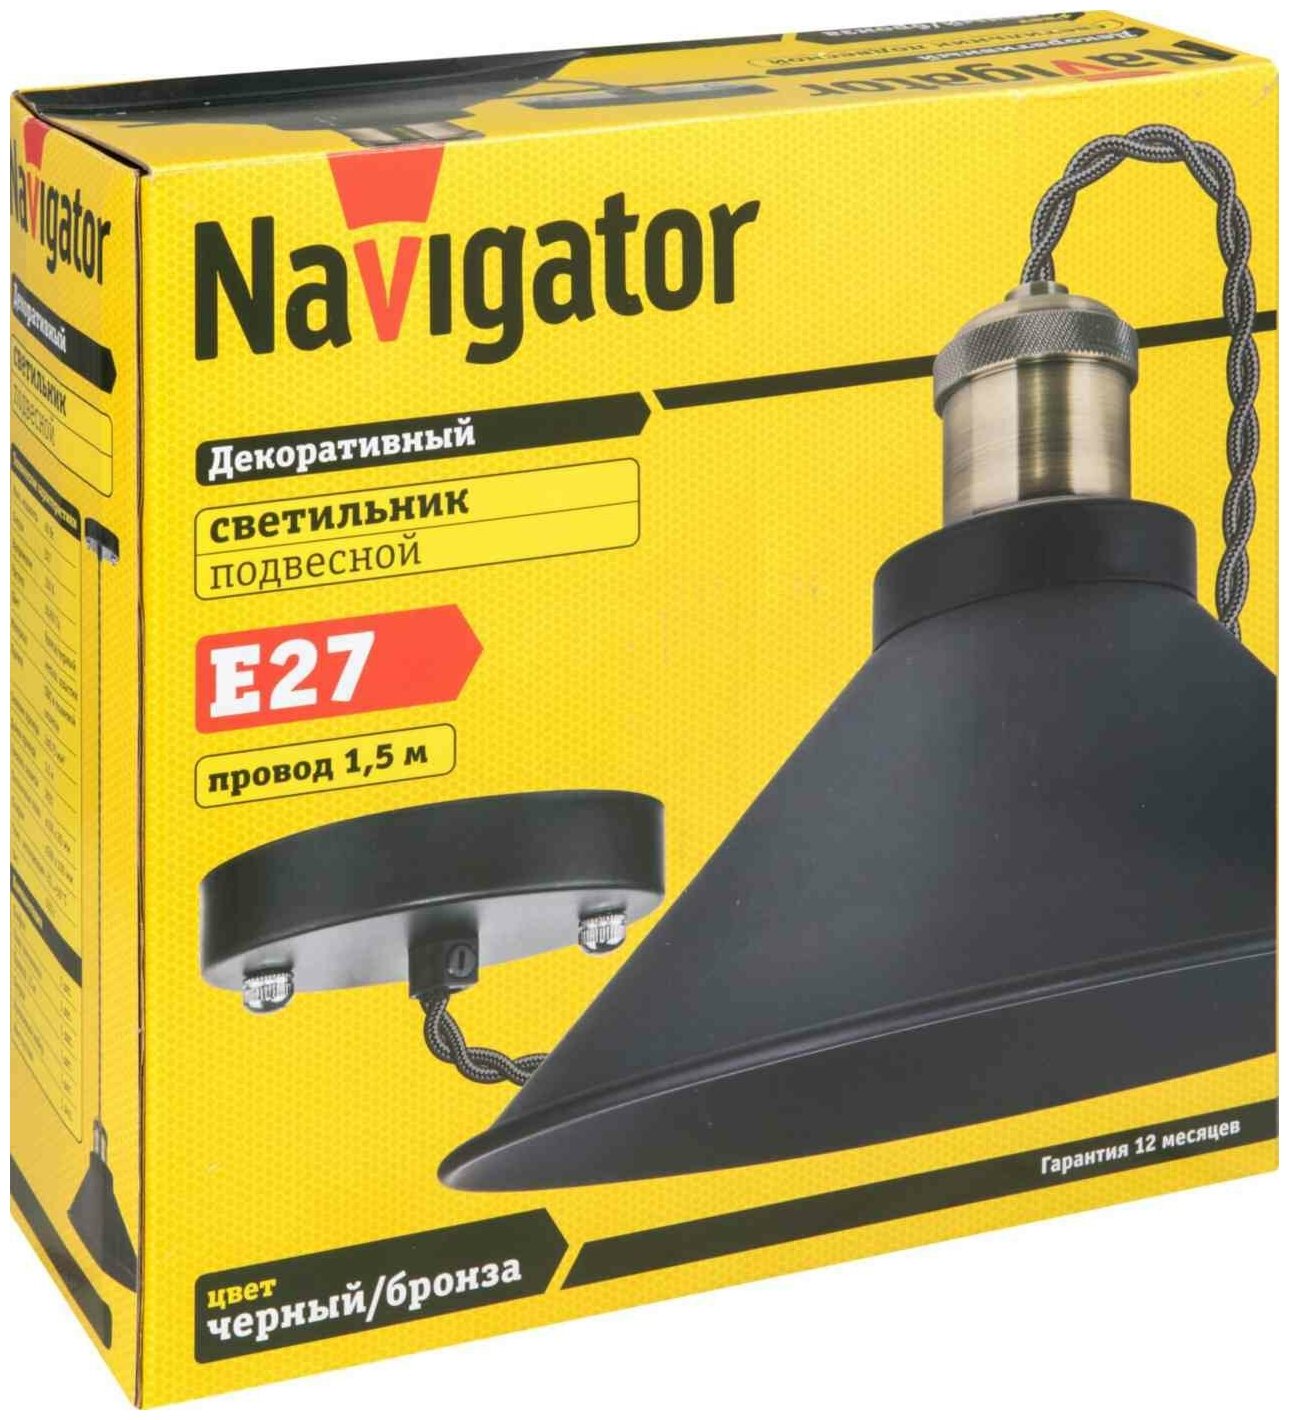 Светильник потолочный Navigator 61 536 для бильярда и кафе, 60 Вт, E27, 1,5 м, черный/бронзовый